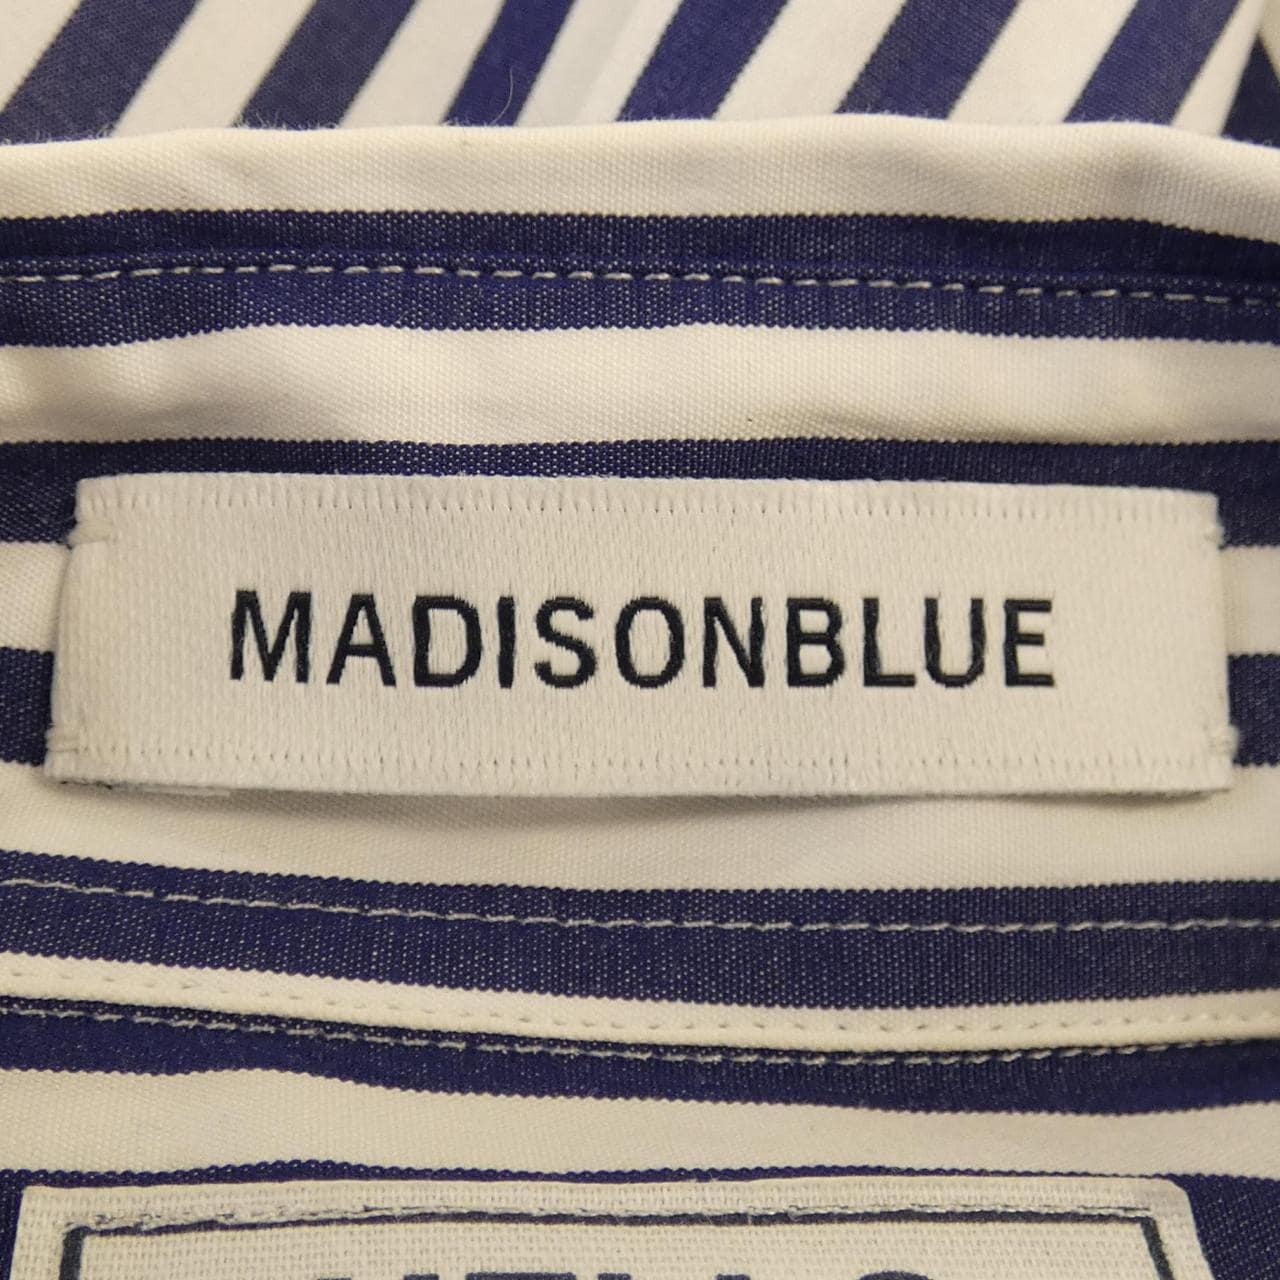 Madison blue MADISON BLUE shirt